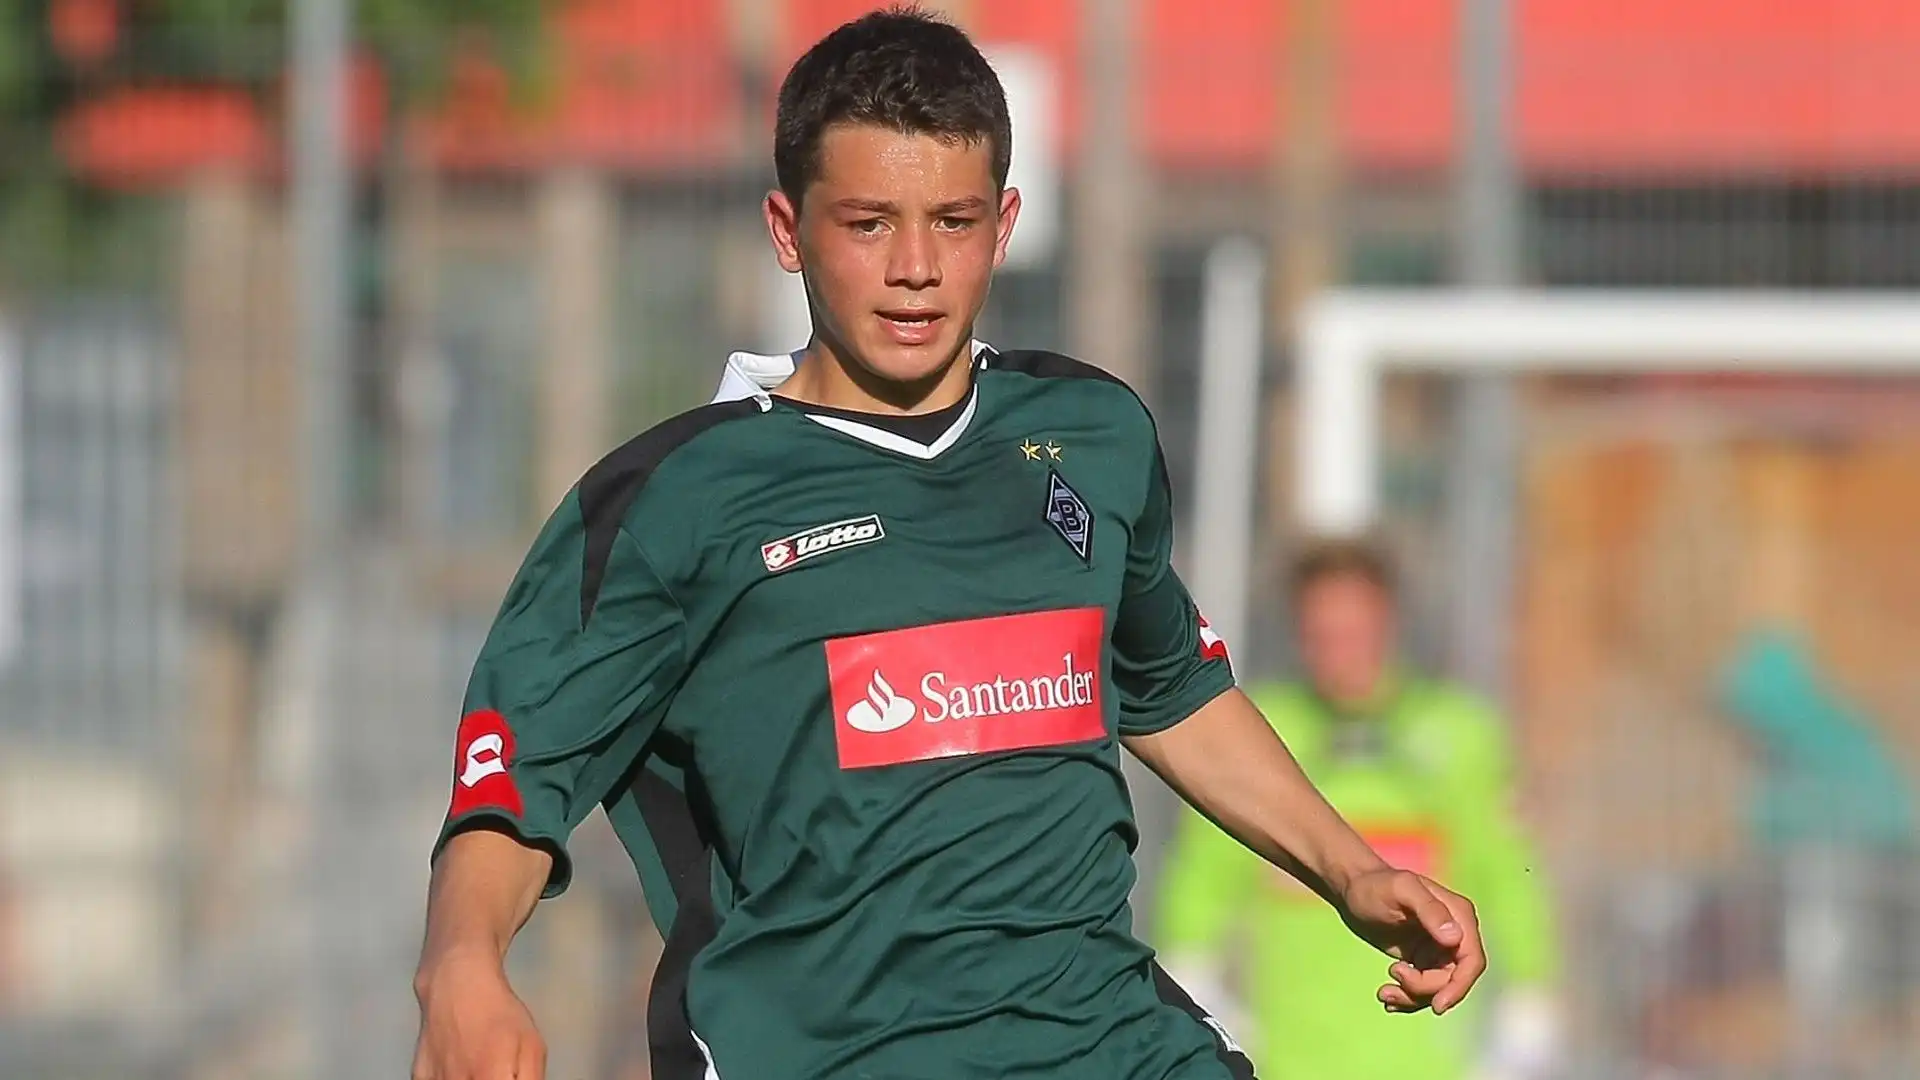 La sua carriera è iniziata proprio in Germania con il Borussia M'gladbach